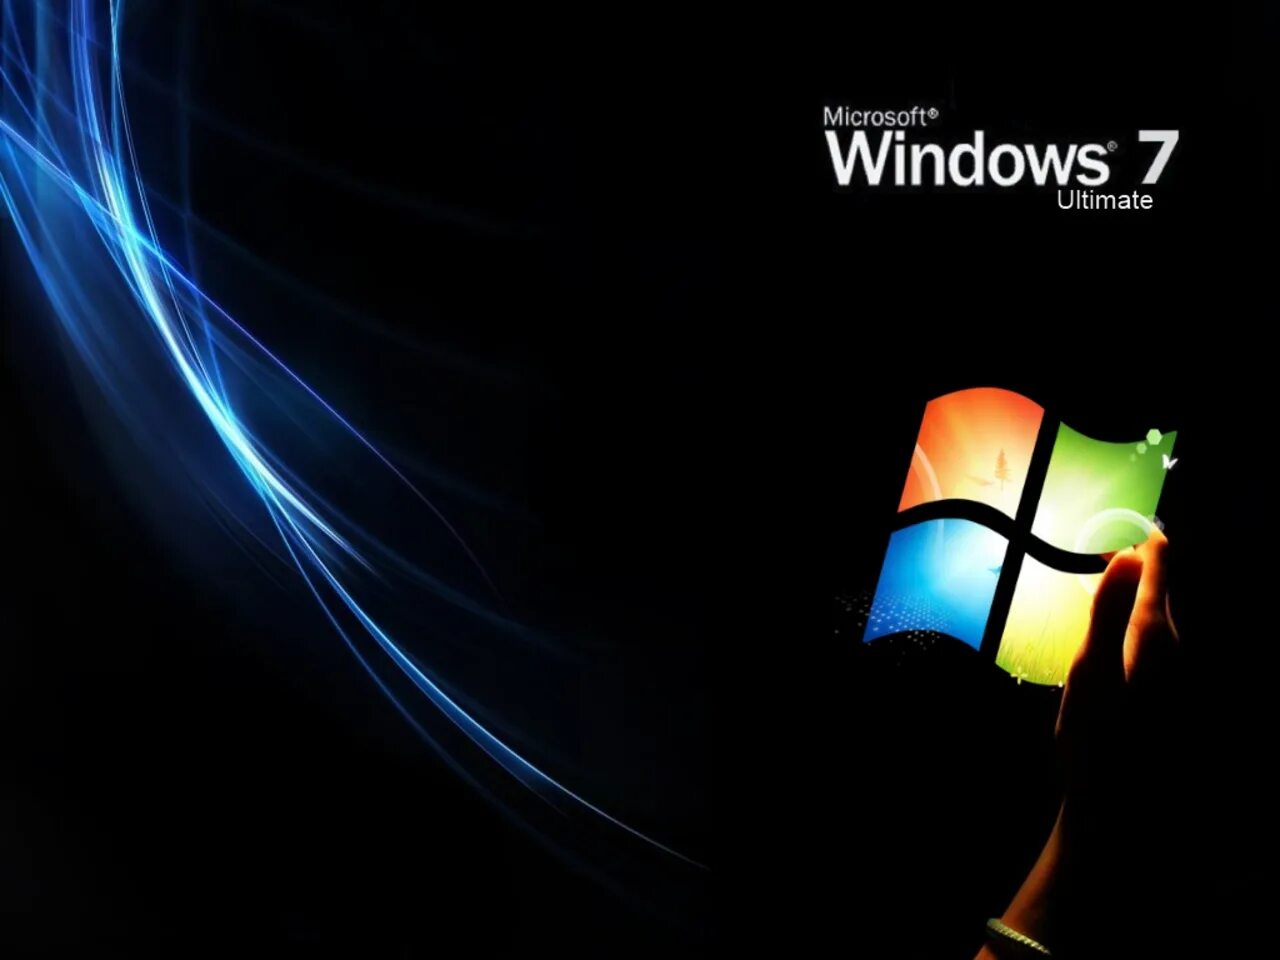 Сборки вин 7. Виндовс 7. Обои Windows 7. Виндовс 7 ультиматум. Windows 7 максимальная Ultimate.